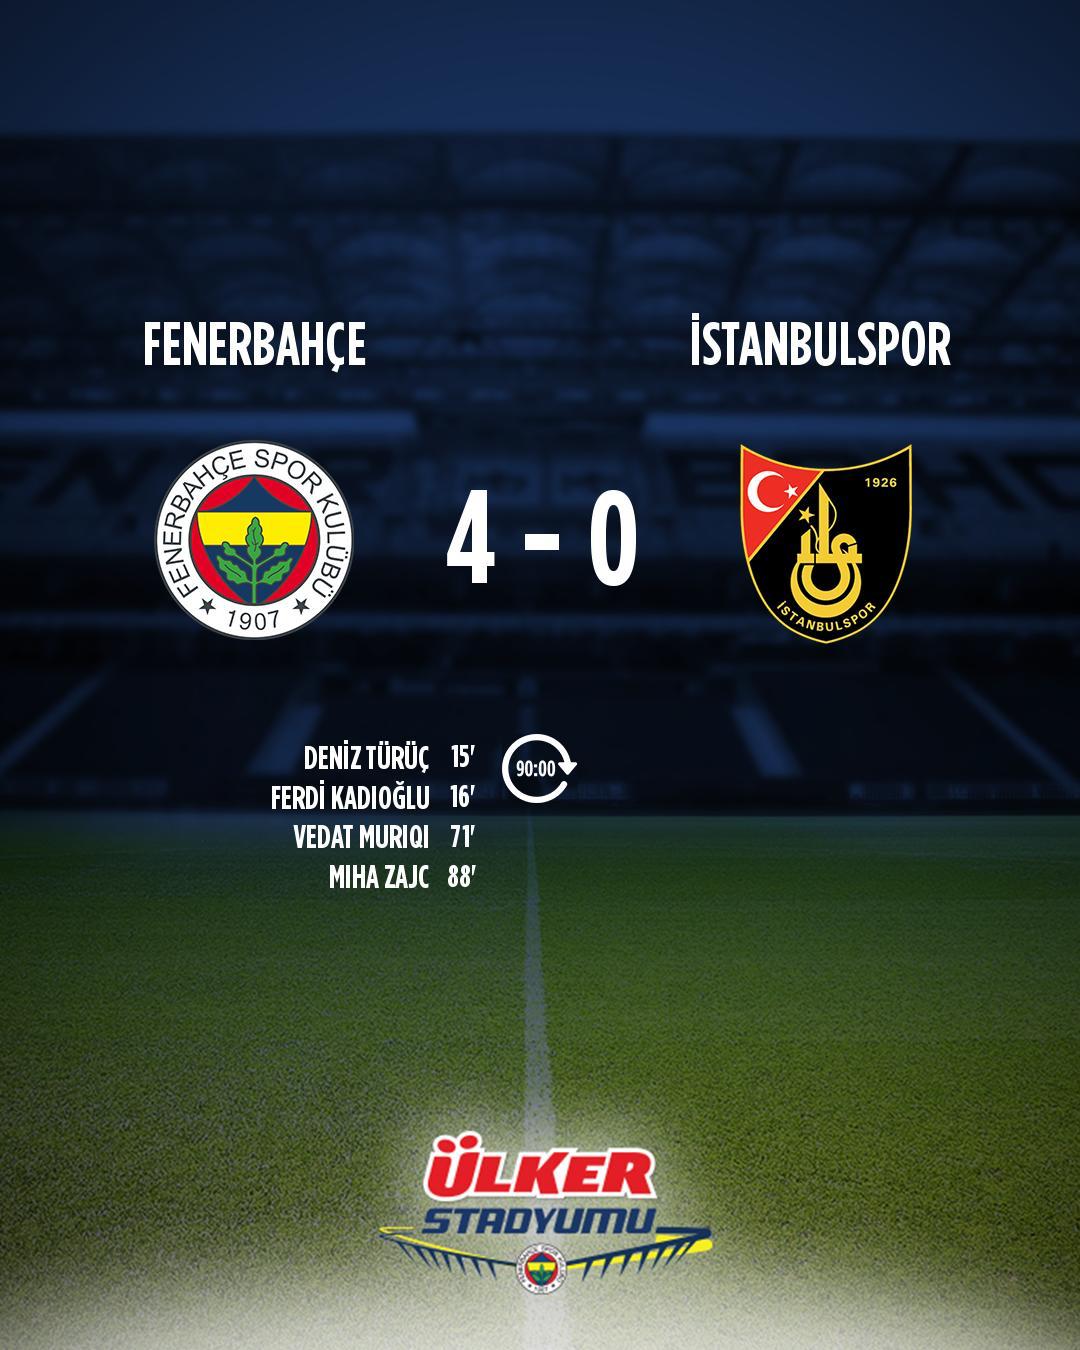 Fenerbahçe x Trabzonspor: Uma rivalidade histórica no futebol turco